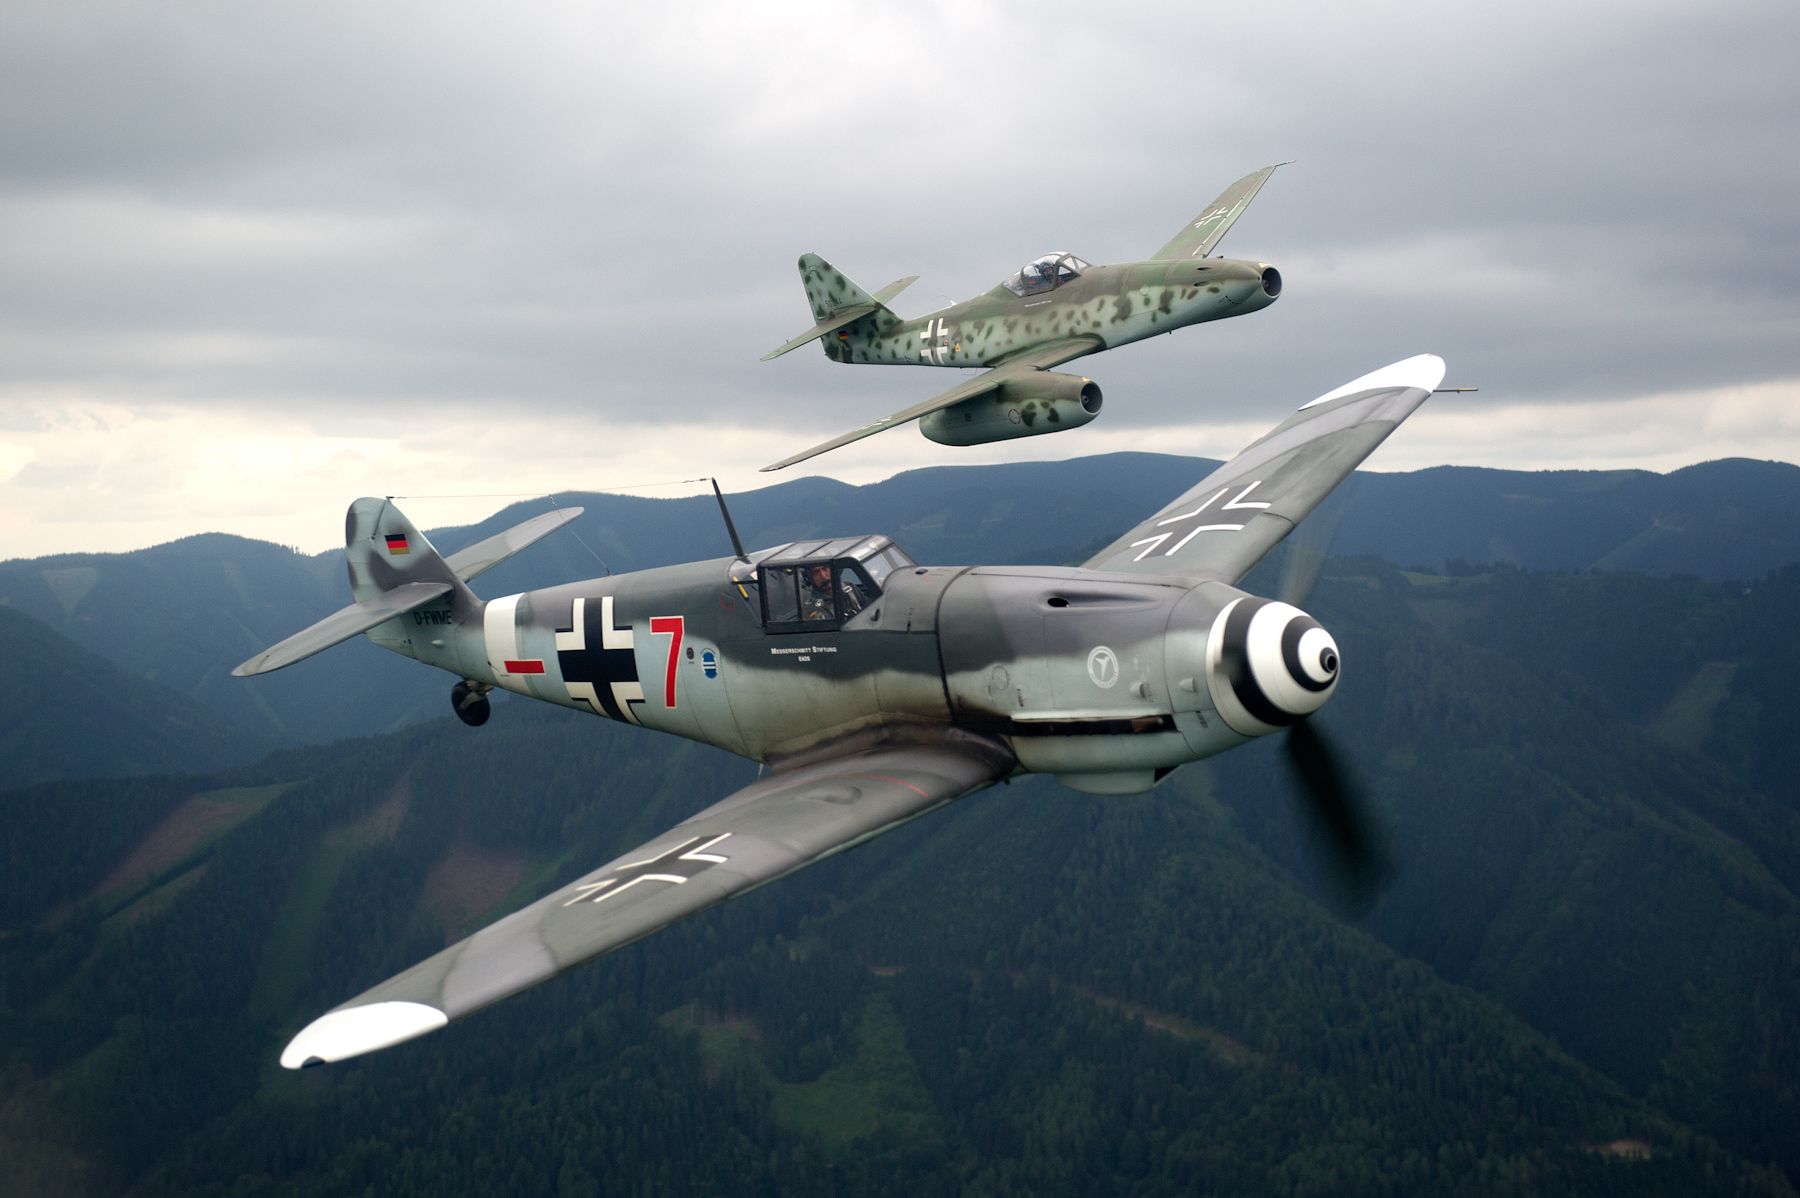 Messerschmitt Bf 109 Wallpaper